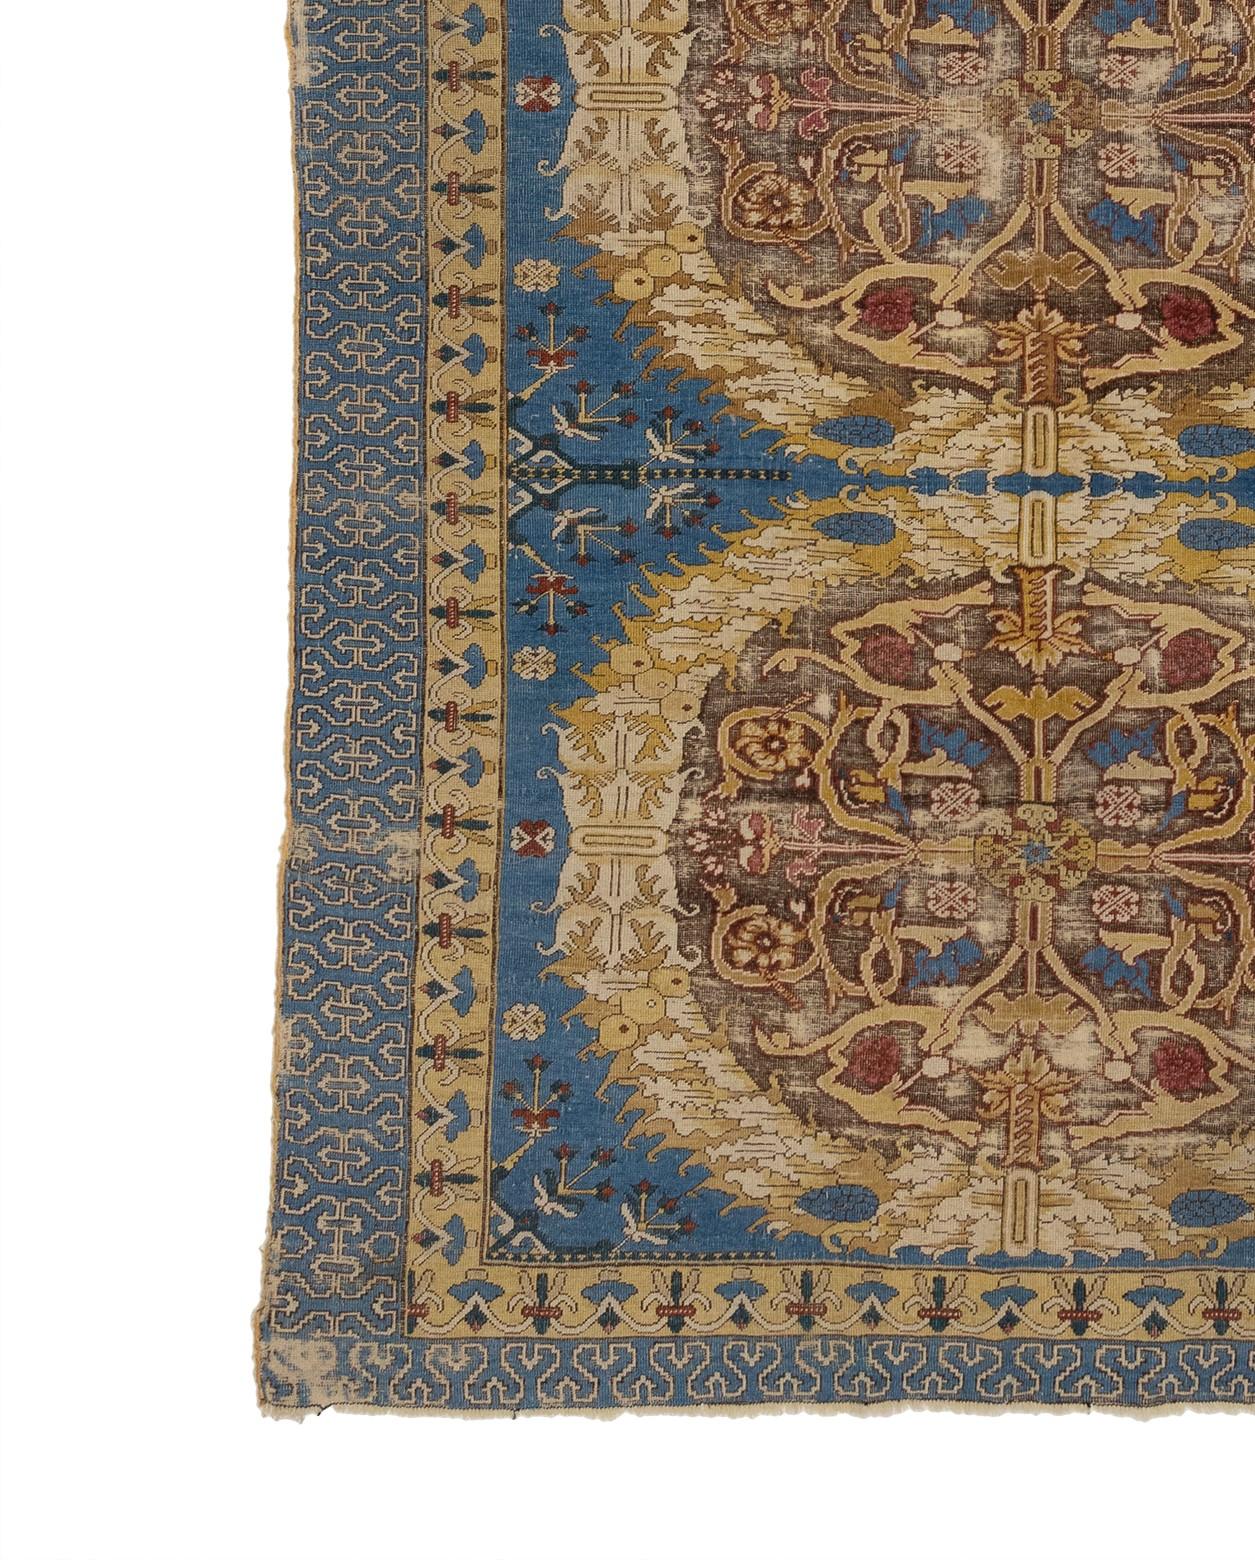 Le tapis traditionnel connu sous le nom de Karabagh antique caucasien serait originaire de la région du Karabagh dans les montagnes du Caucase, qui s'étend sur une partie de l'Azerbaïdjan et de l'Arménie d'aujourd'hui. Avec leurs trois grands